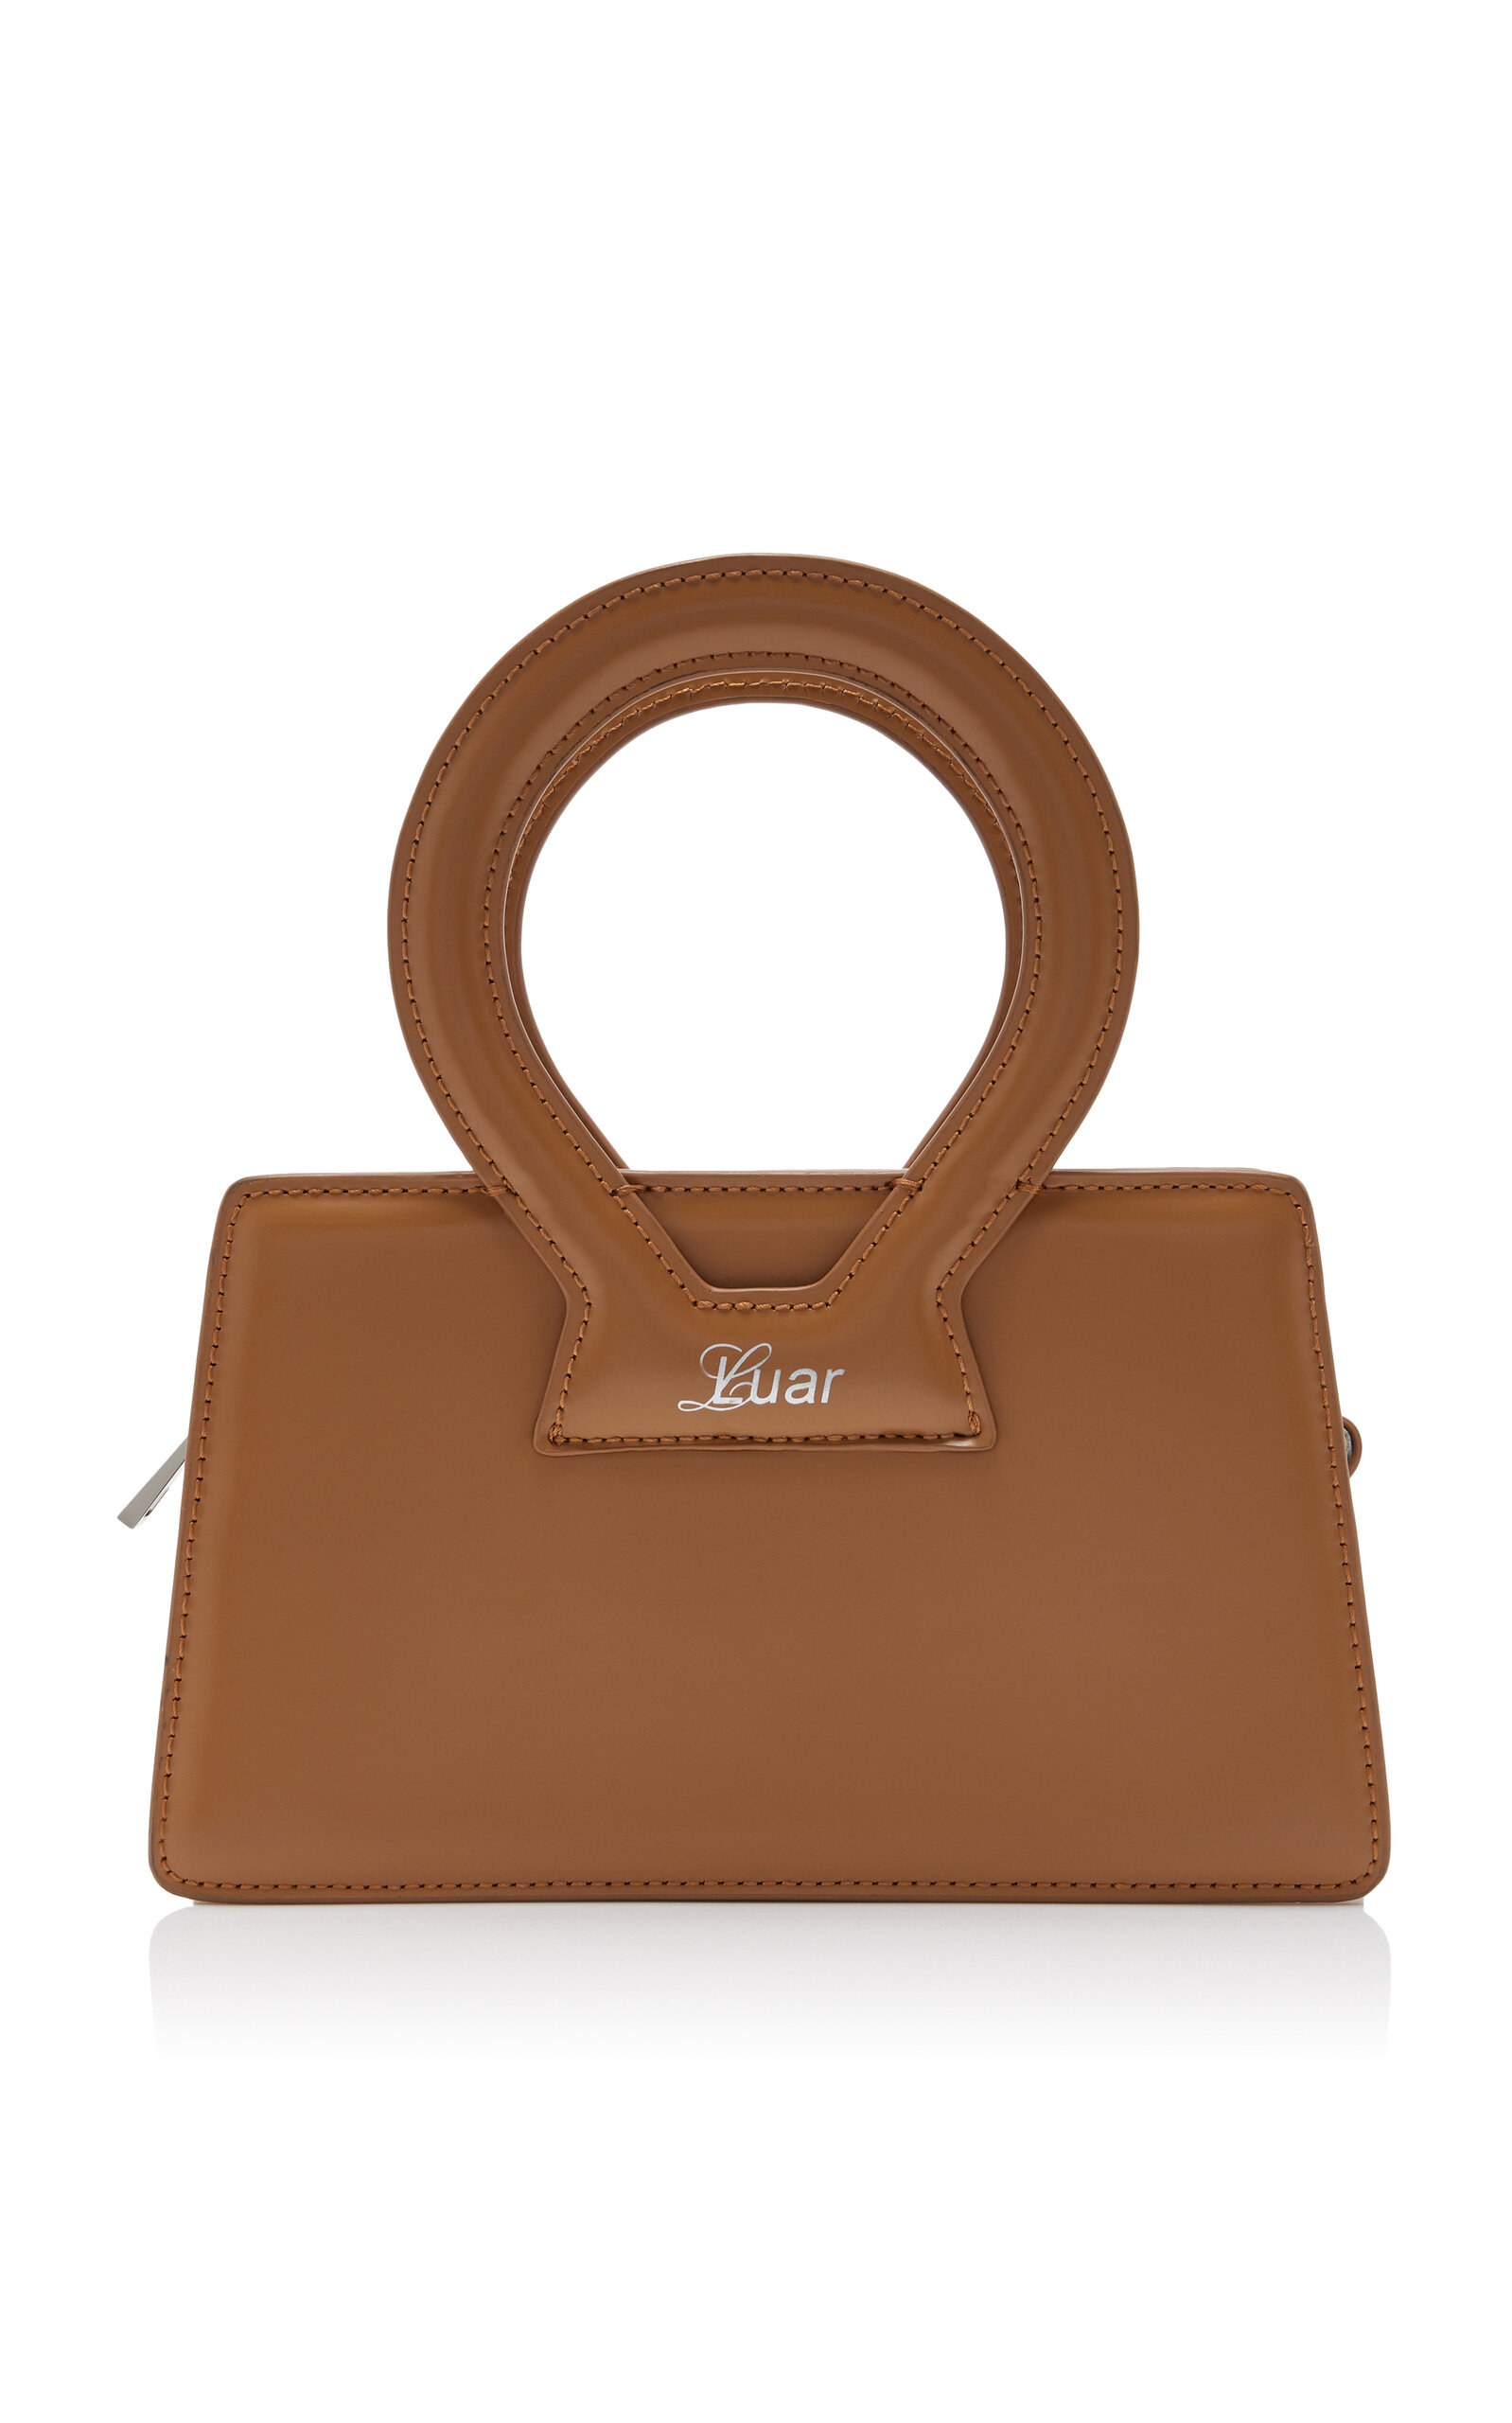 Small Ana Leather Top Handle Bag